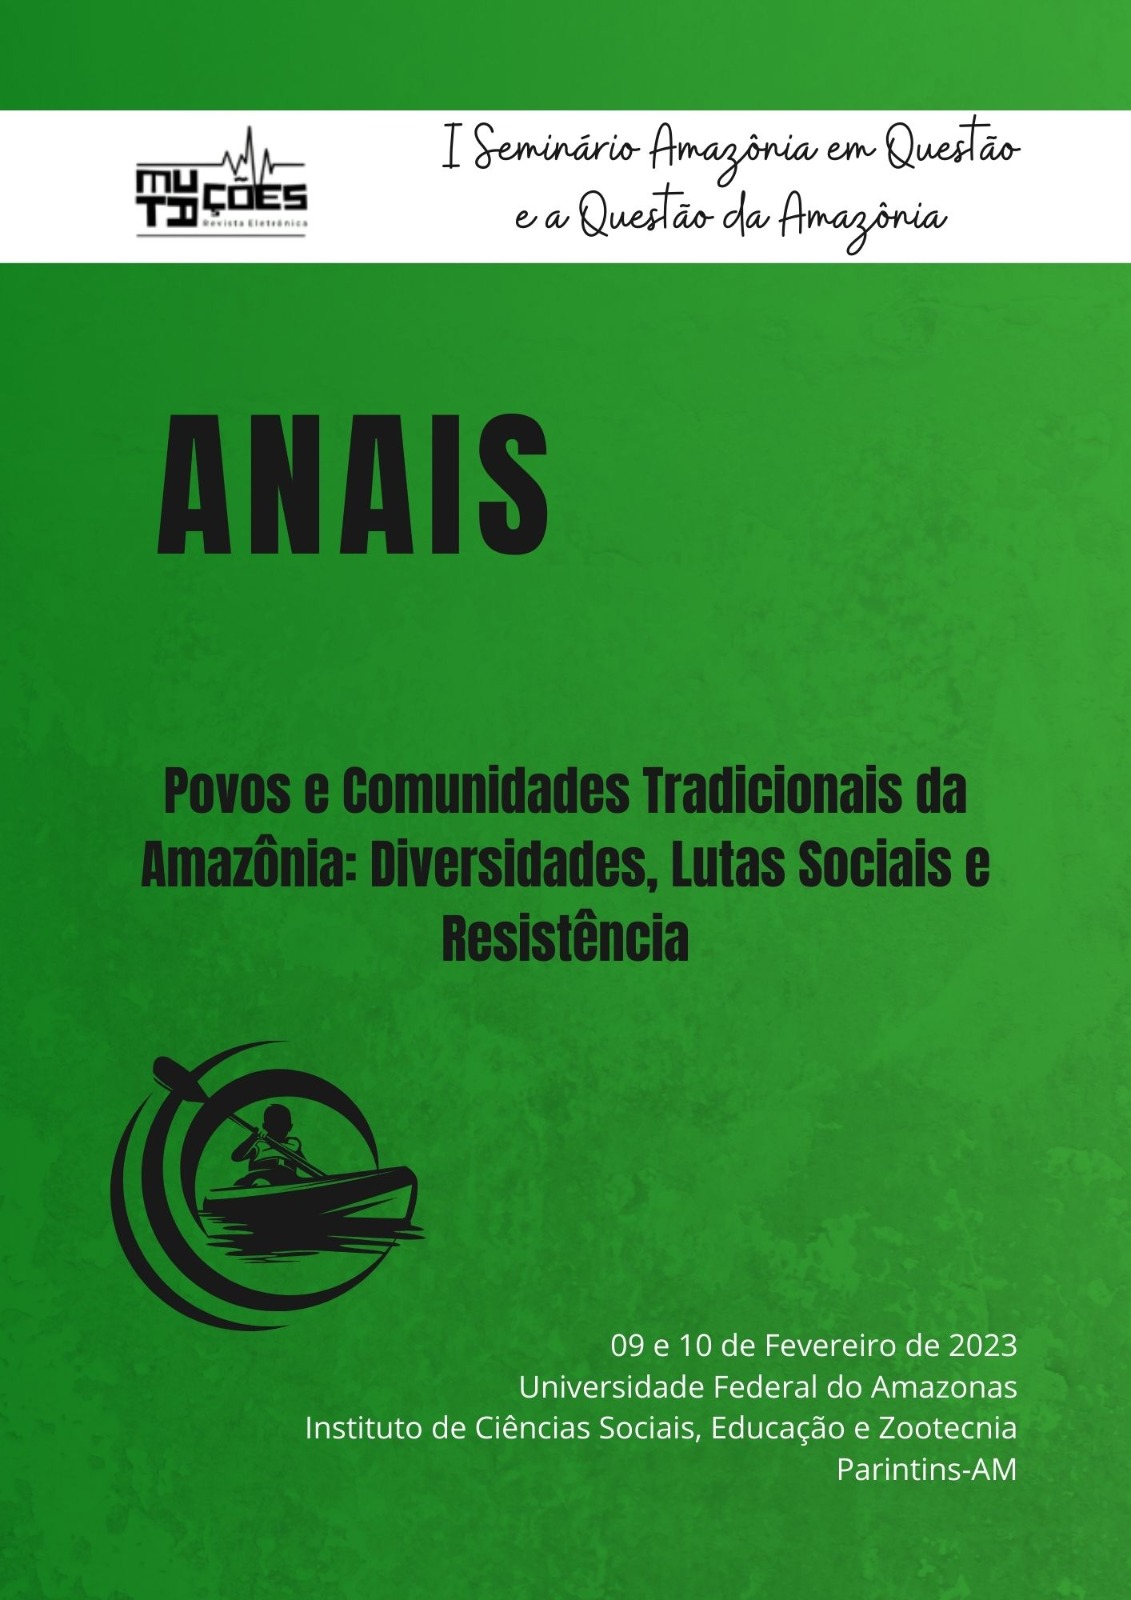 					View Vol. 16 No. 26, Sup. 2 (2023): Anais do I Seminário “Amazônia em Questão e a Questão da Amazônia”: “Povos e Comunidades Tradicionais da Amazônia: Diversidades, Lutas Sociais e Resistência”
				